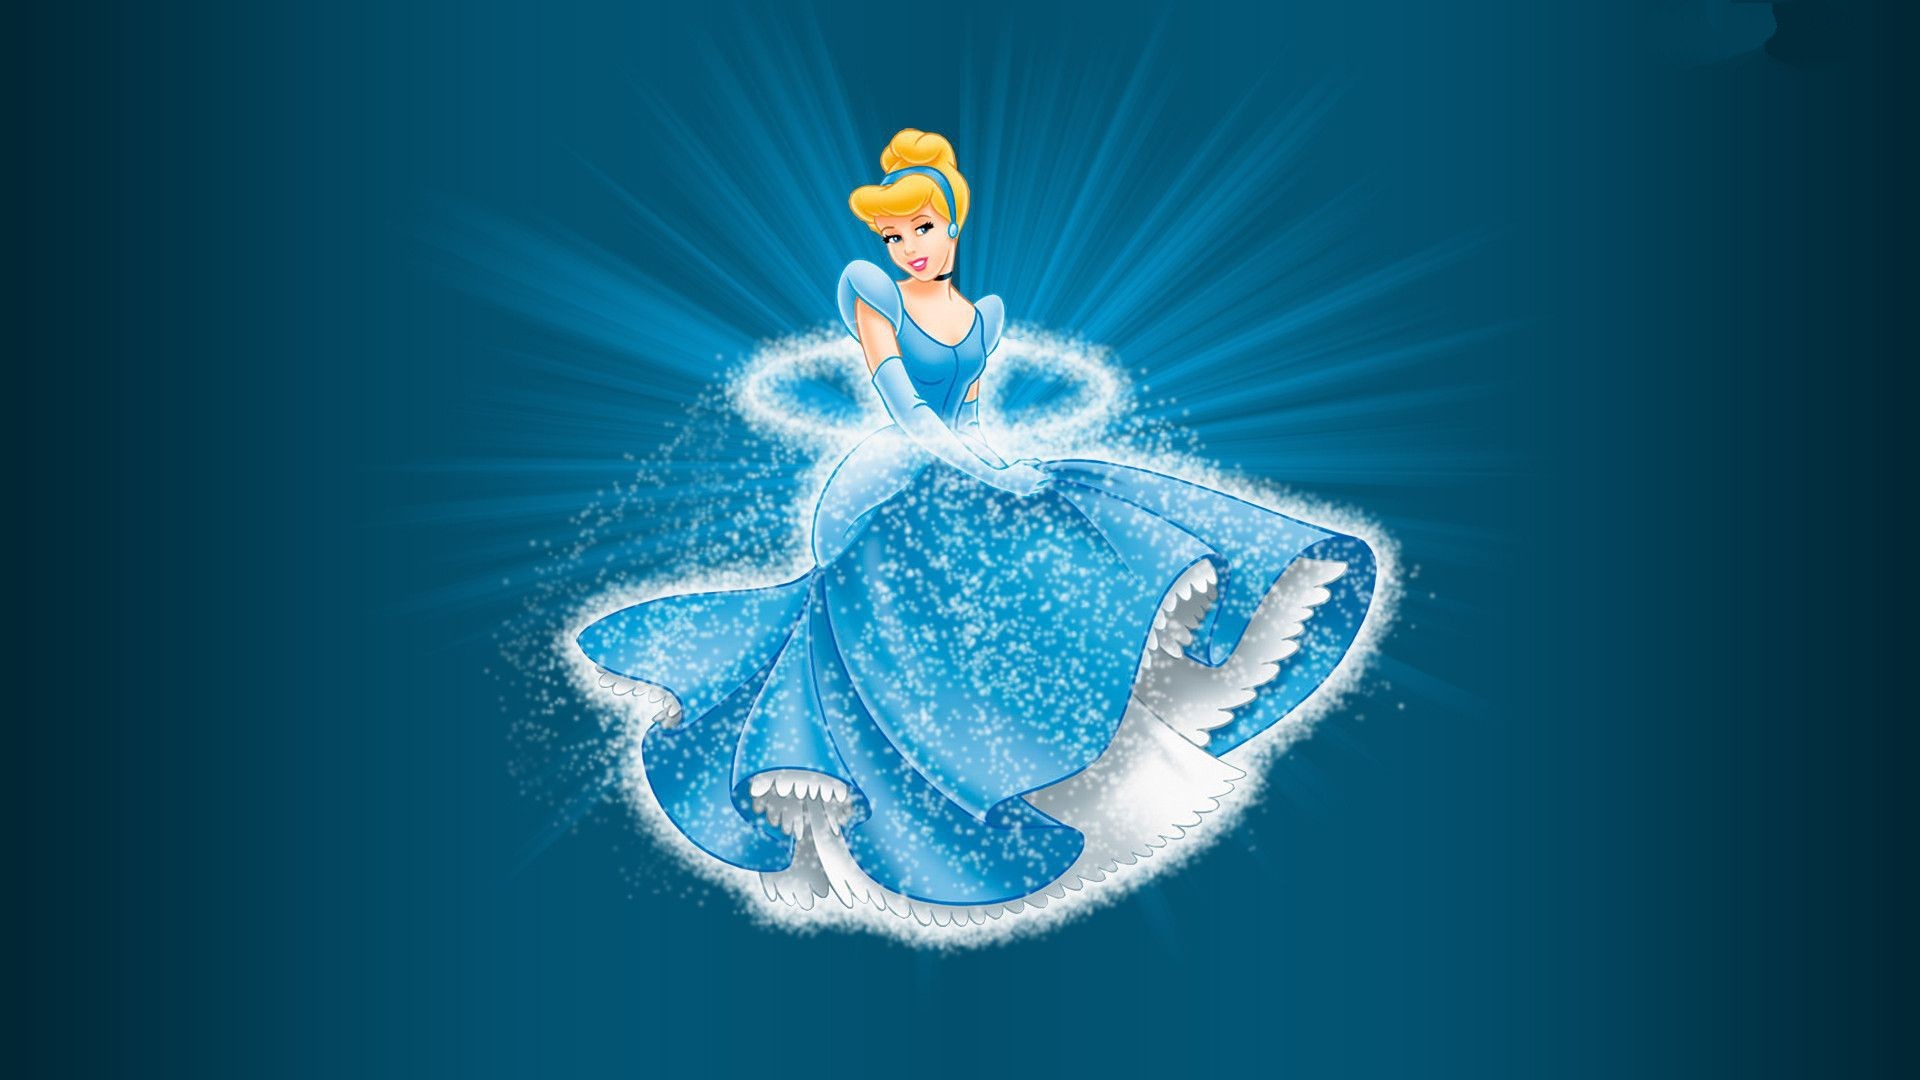 1920x1080 wallpaper.wiki-Cinderella-Princess-Wallpaper-PIC-WPD0010865